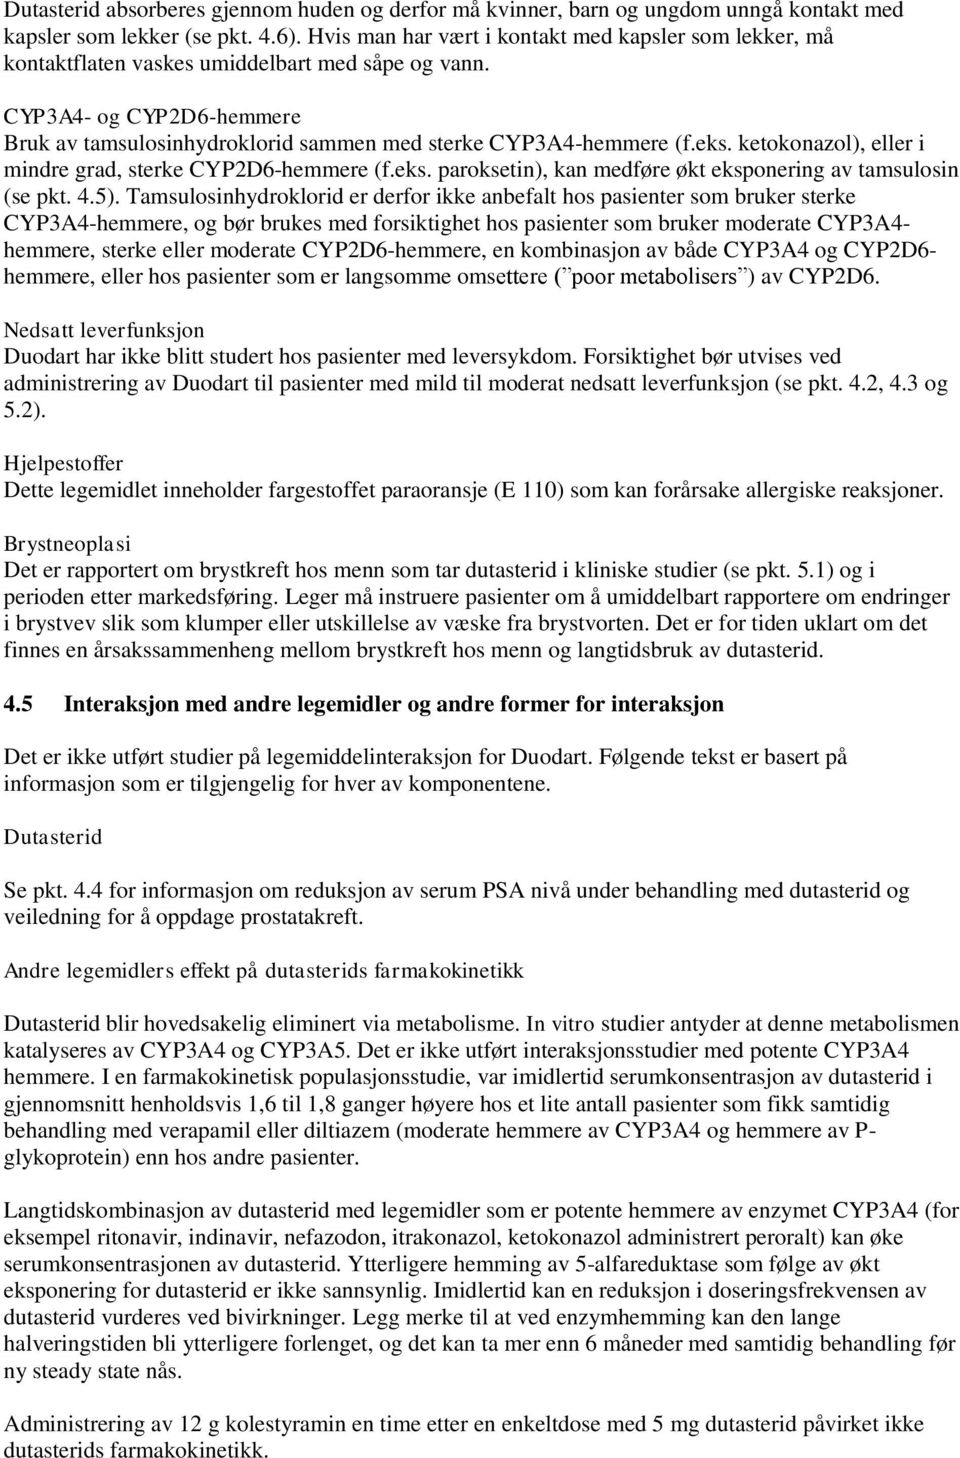 eks. ketokonazol), eller i mindre grad, sterke CYP2D6-hemmere (f.eks. paroksetin), kan medføre økt eksponering av tamsulosin (se pkt. 4.5).